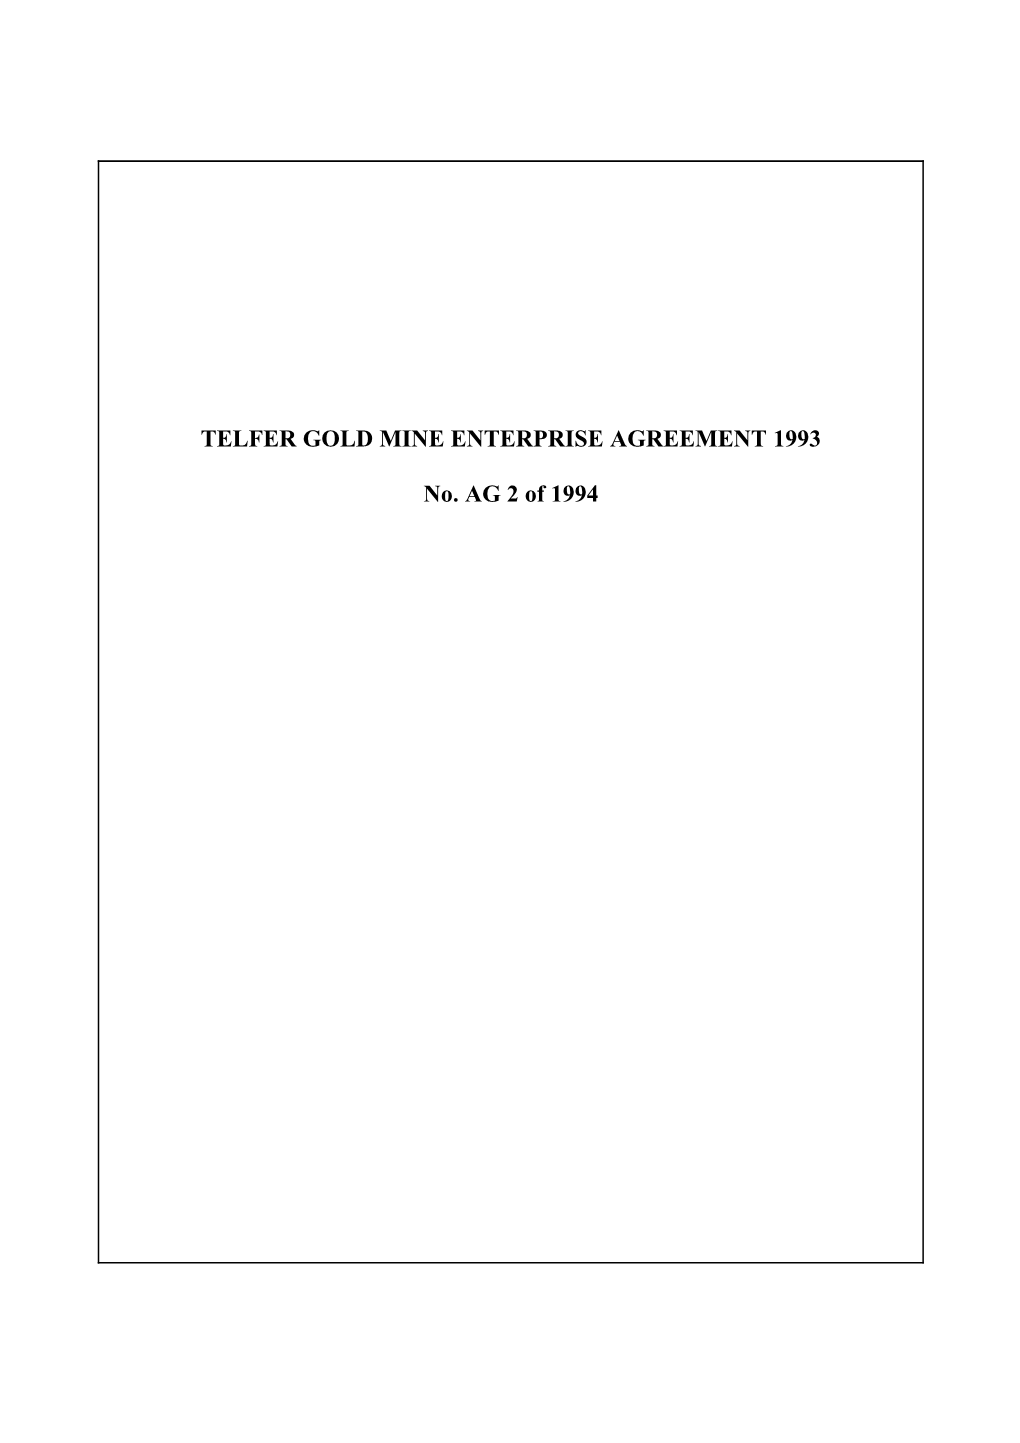 Telfer Gold Mine Enterprise Agreement 1993